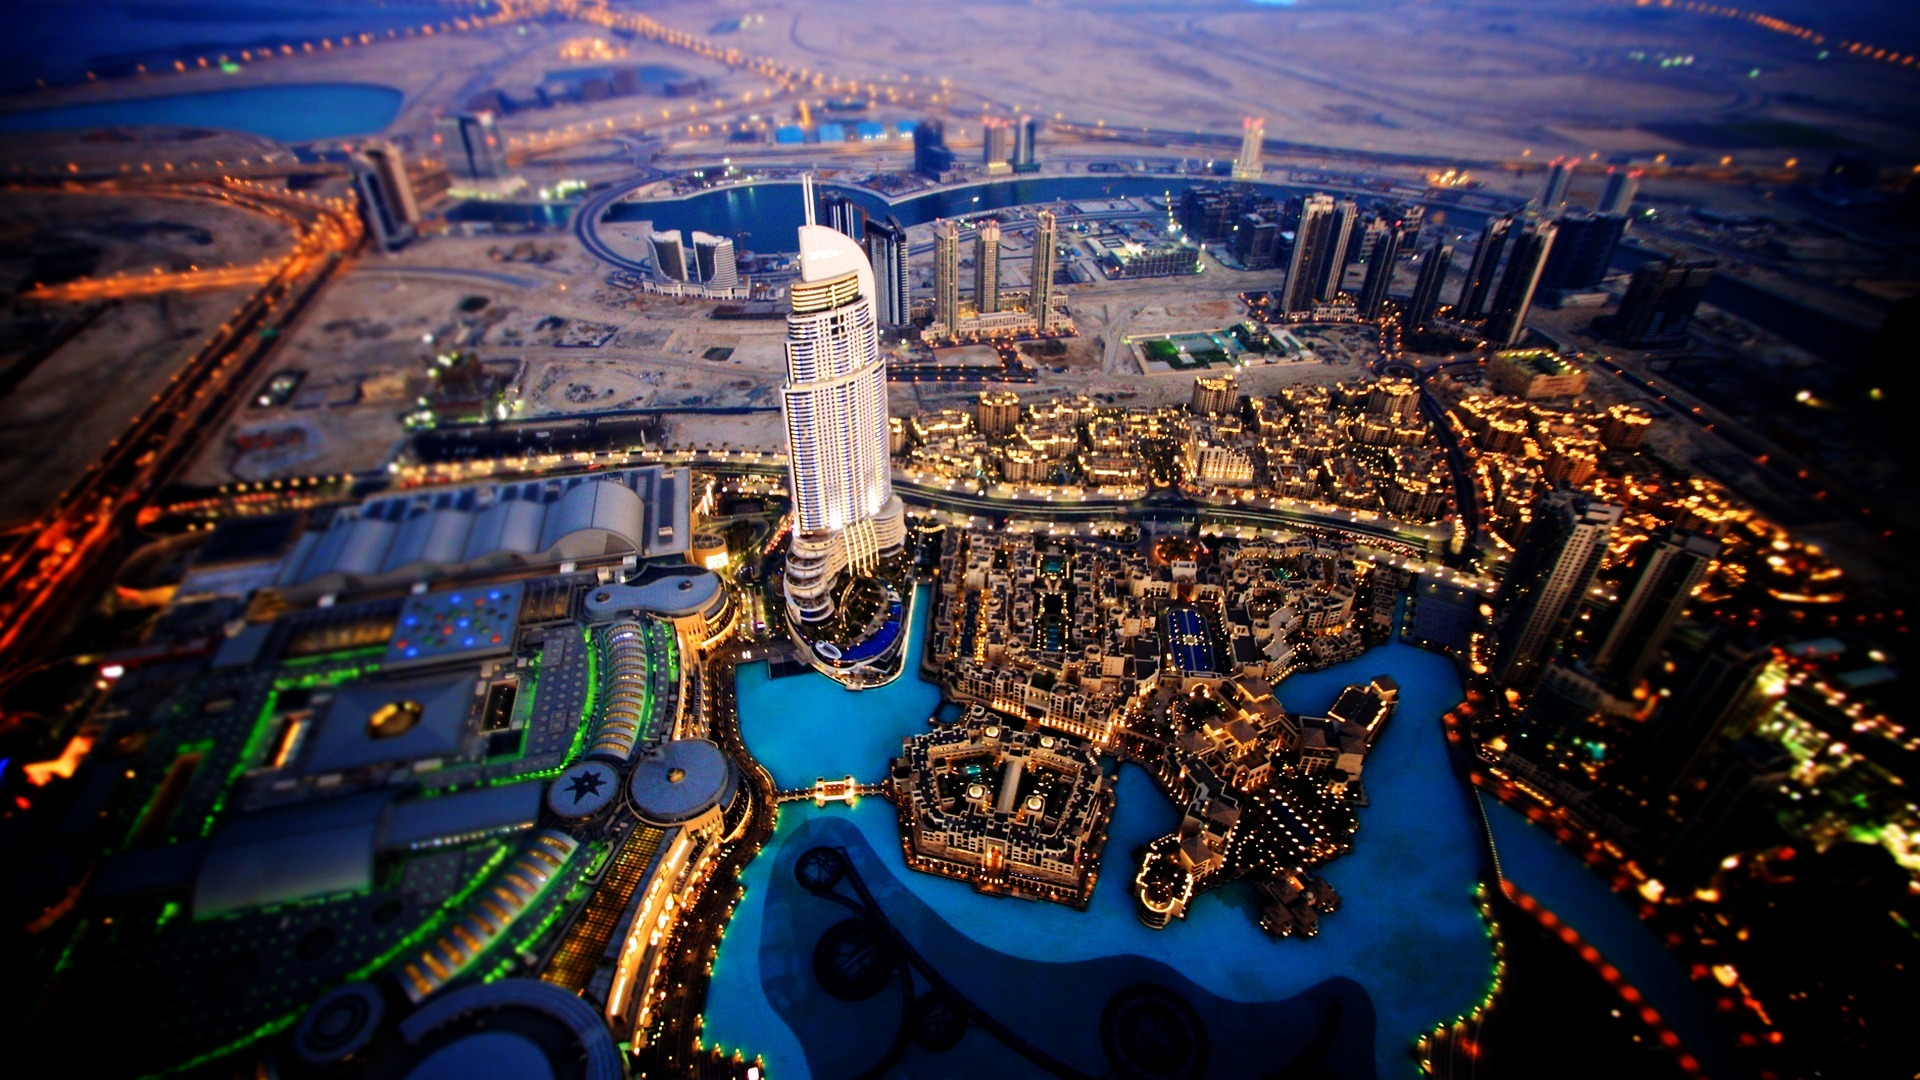 Dubai Sky View for 1920 x 1080 HDTV 1080p resolution